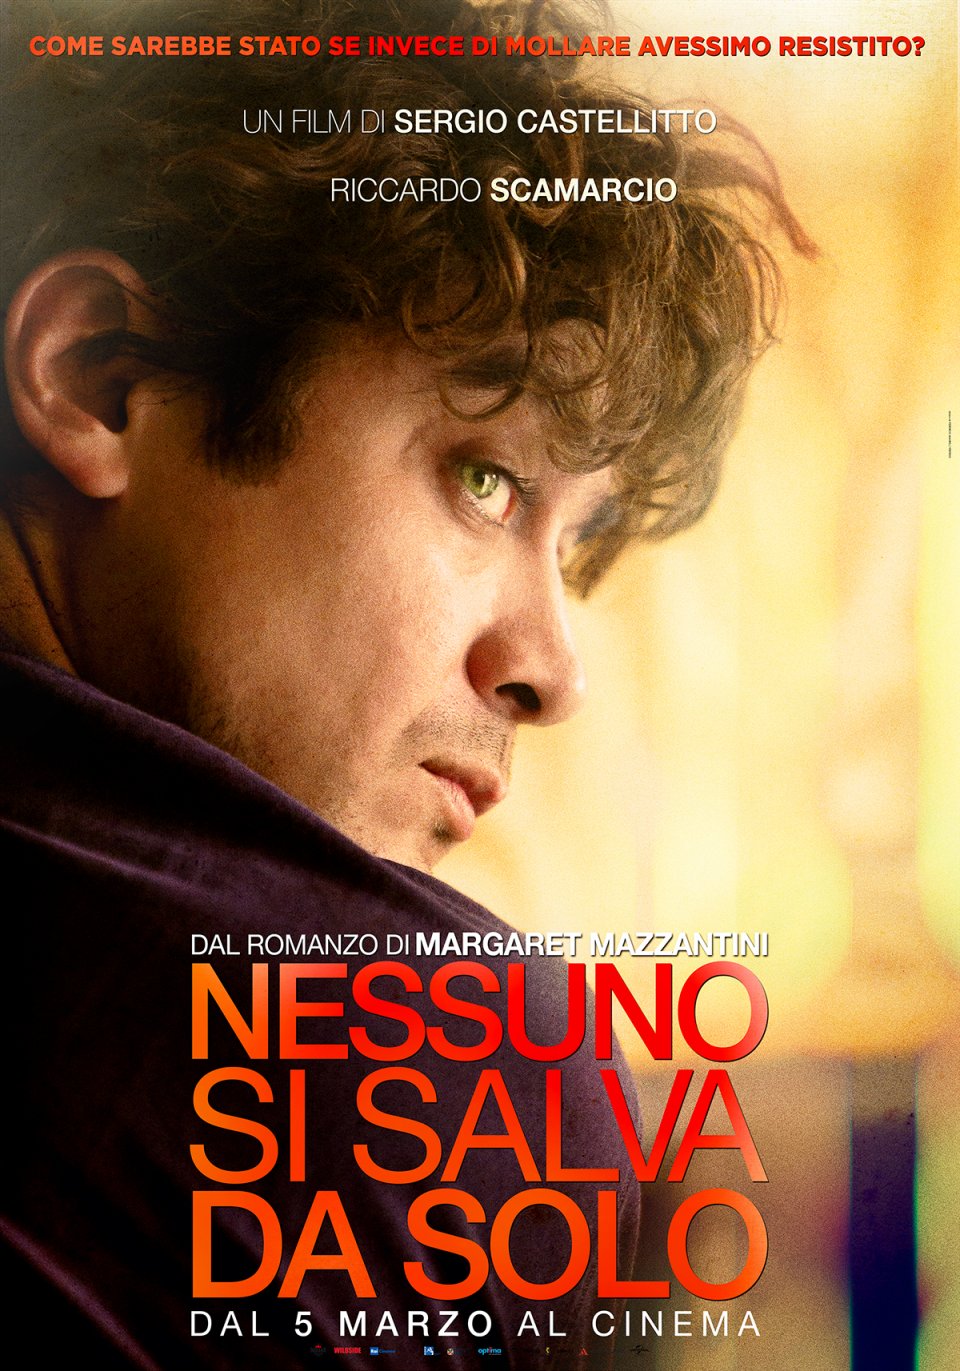 Nessuno si salva da solo - character poster esclusivo con Riccardo Scamarcio